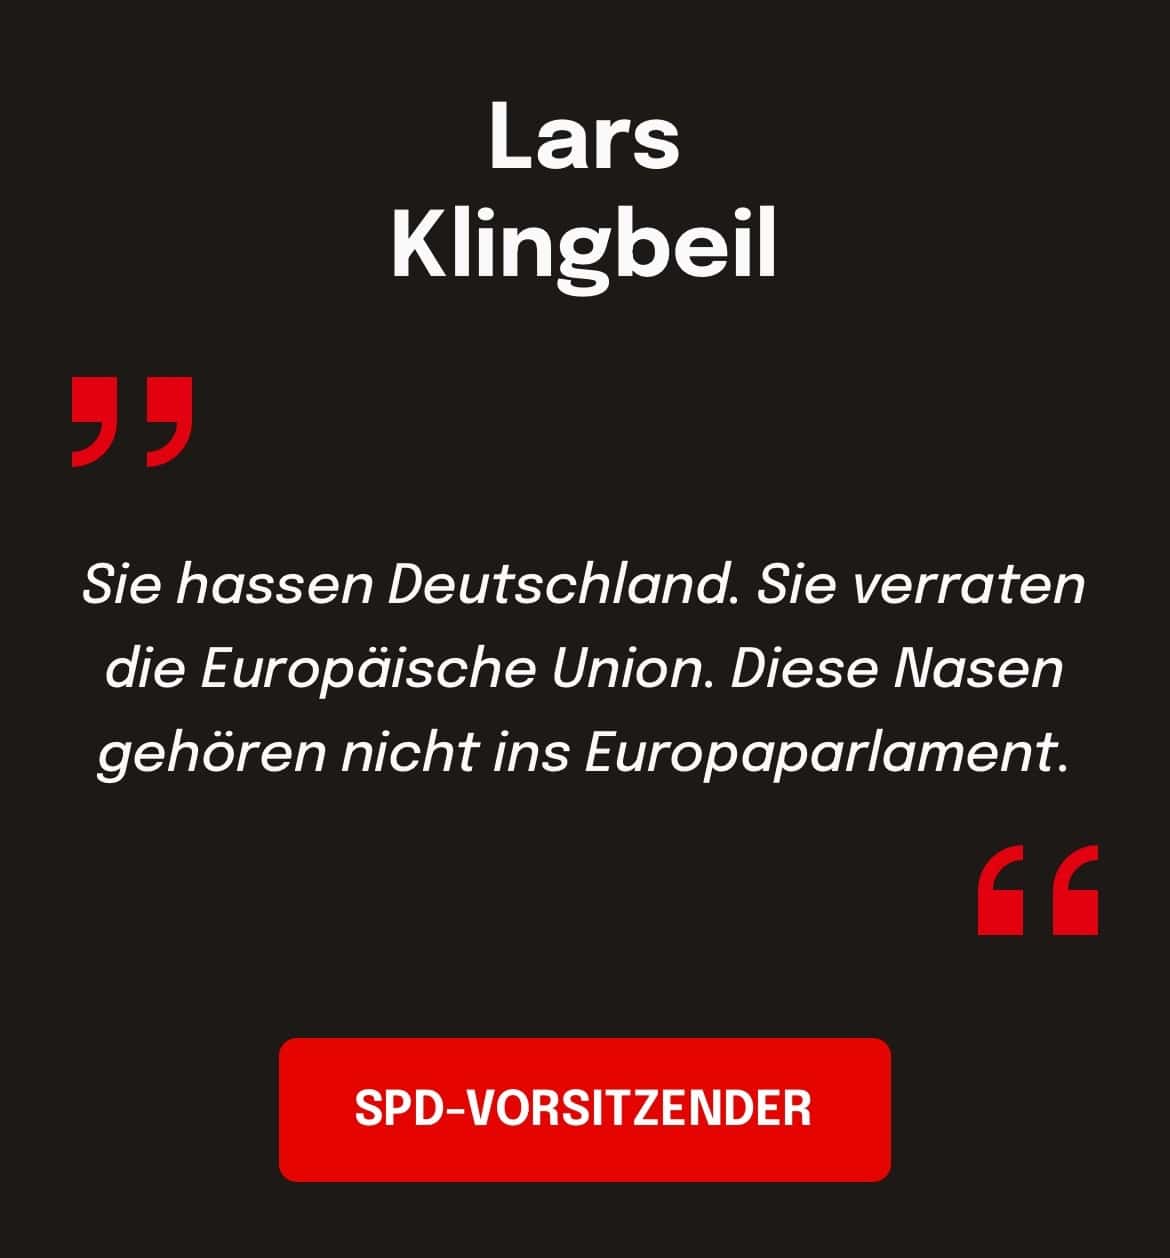 Lars Klingbeil, SPD-Vorsitzende: Sie hassen Deutschland. Sie verraten die Europäische Union. Diese Nasen gehören nicht ins Europaparlament.